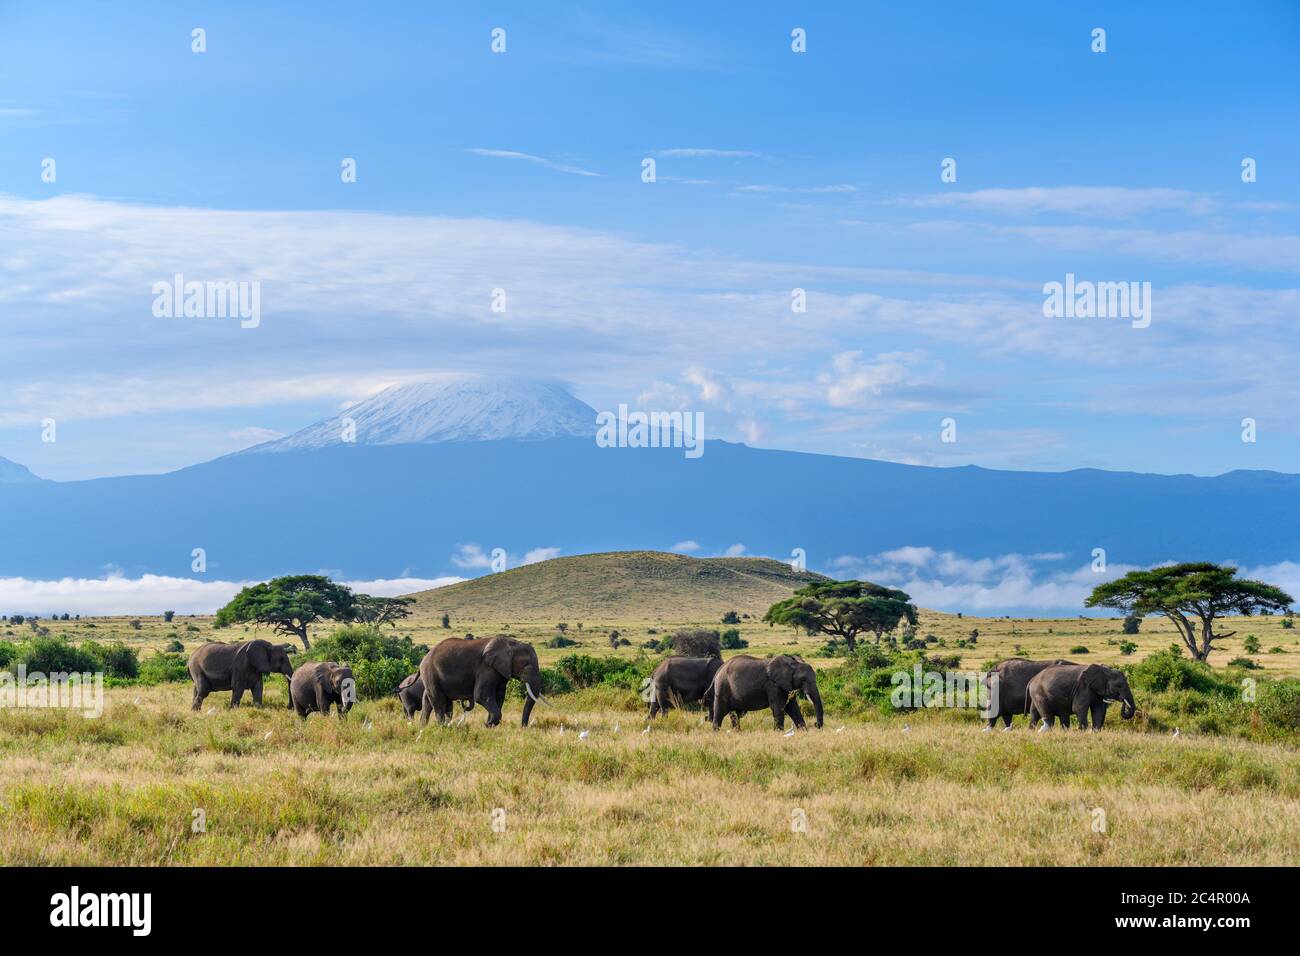 Elefantes africanos de monte (Loxodonta africana) con el monte Kilimanjaro detrás, Parque Nacional Amboseli, Kenia, África Foto de stock